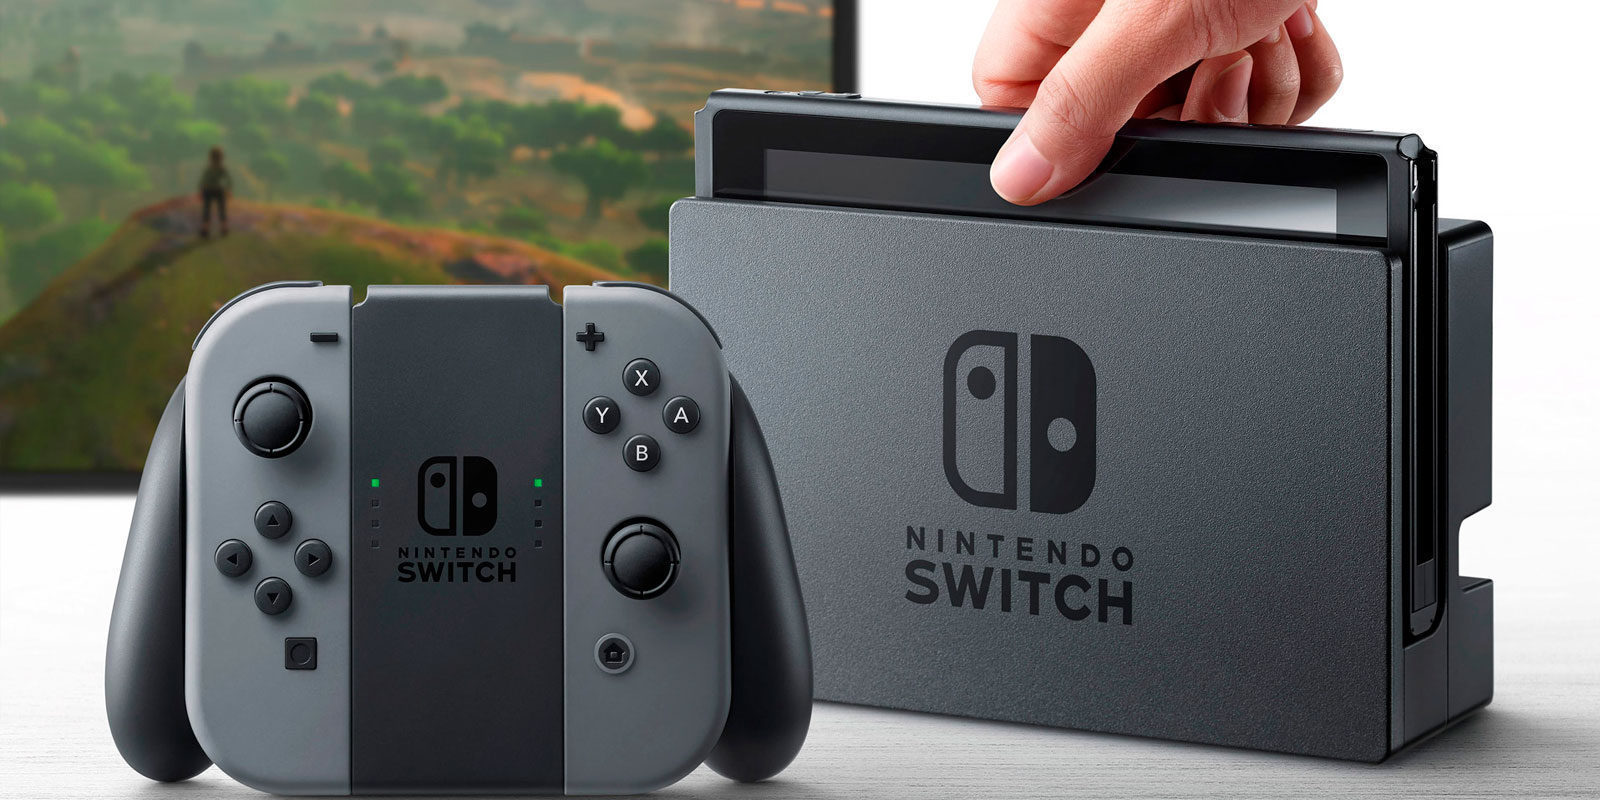 Nintendo Switch es compatible con teclados USB